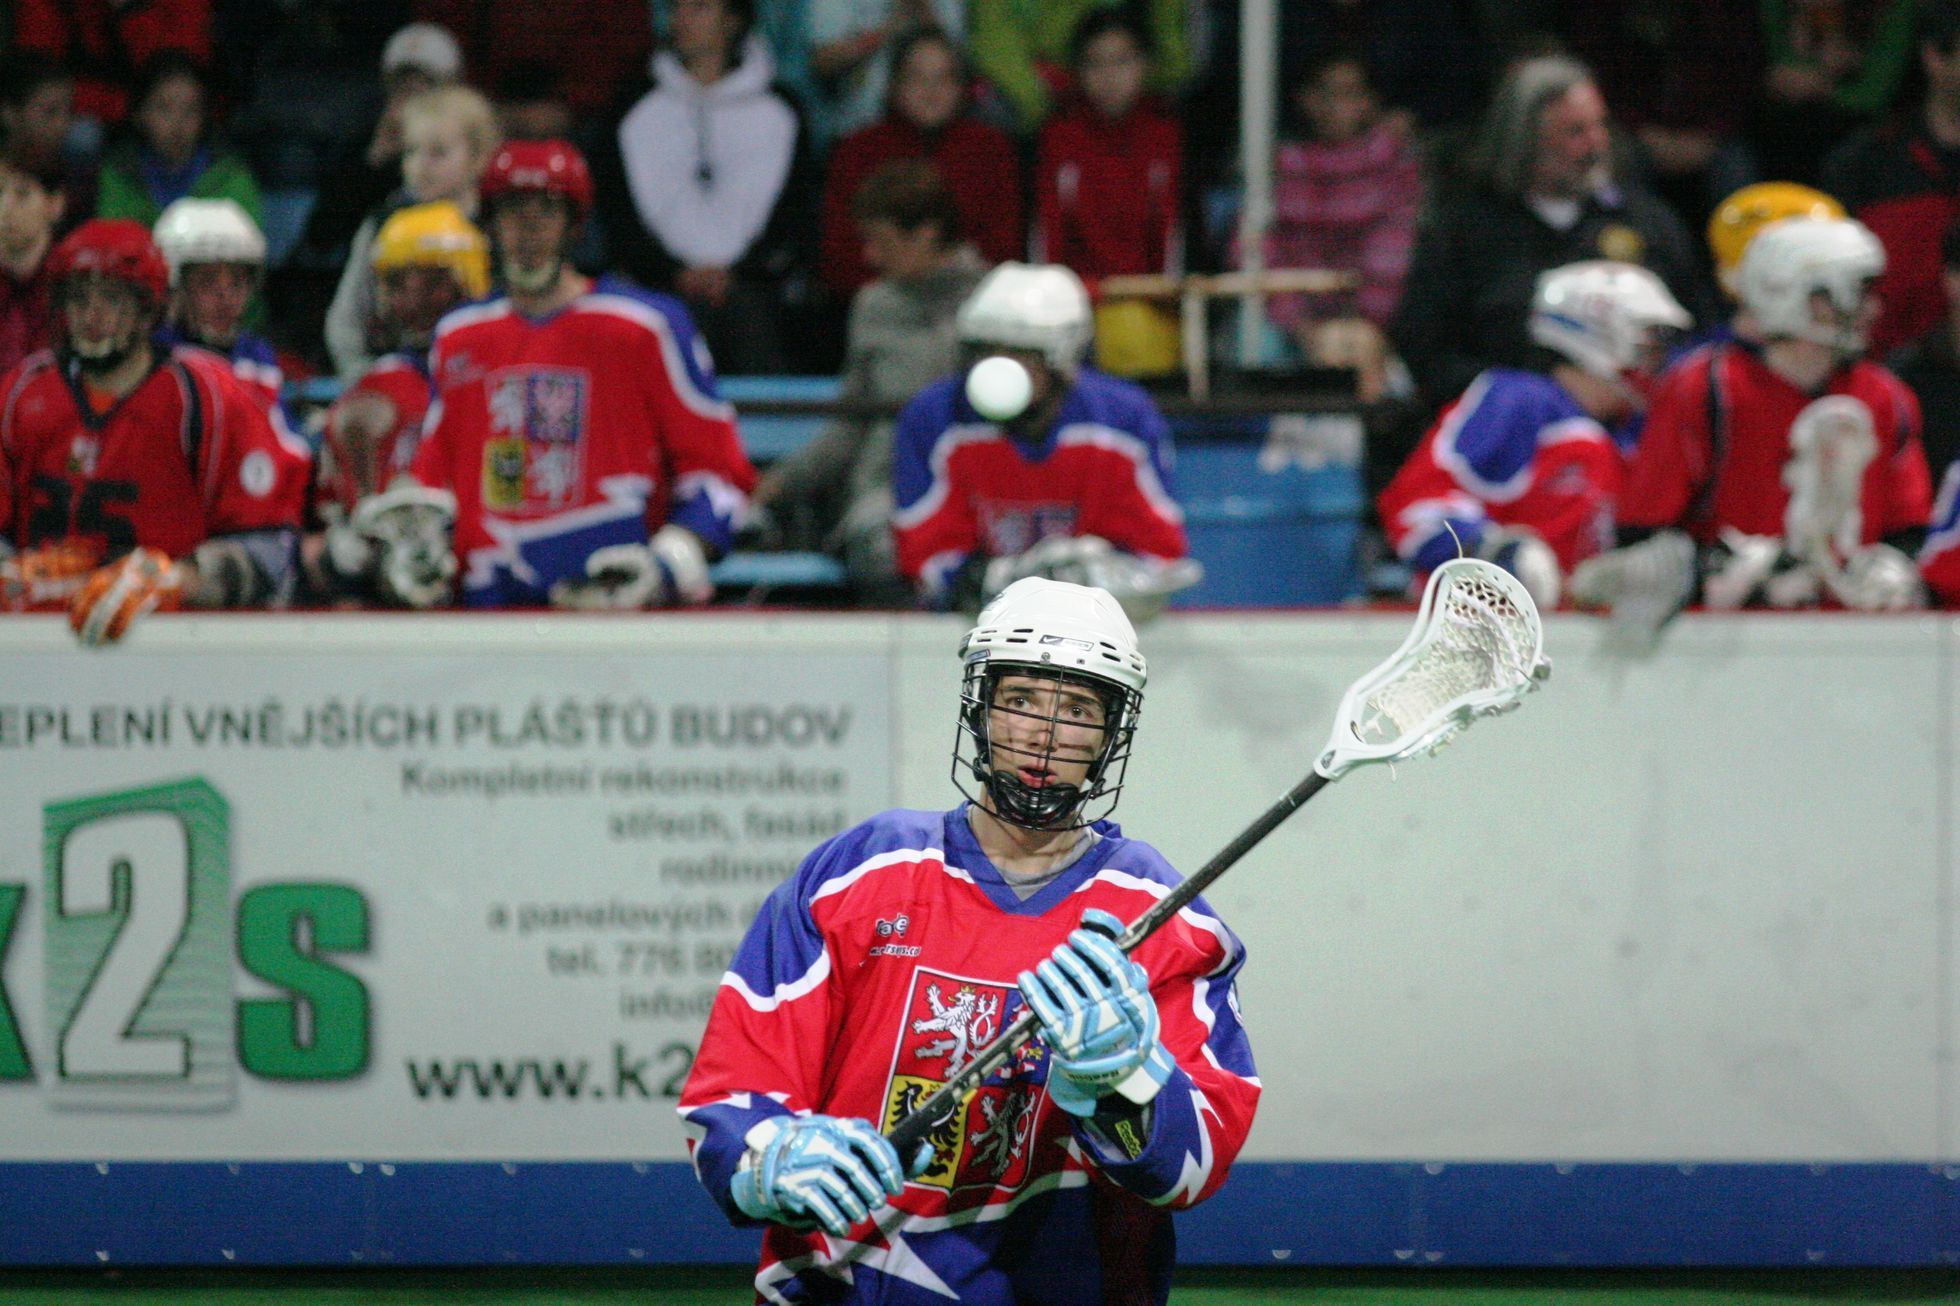 Memoriál Aleše Hřebeského v Radotíně 2014 (box-lacrosse)